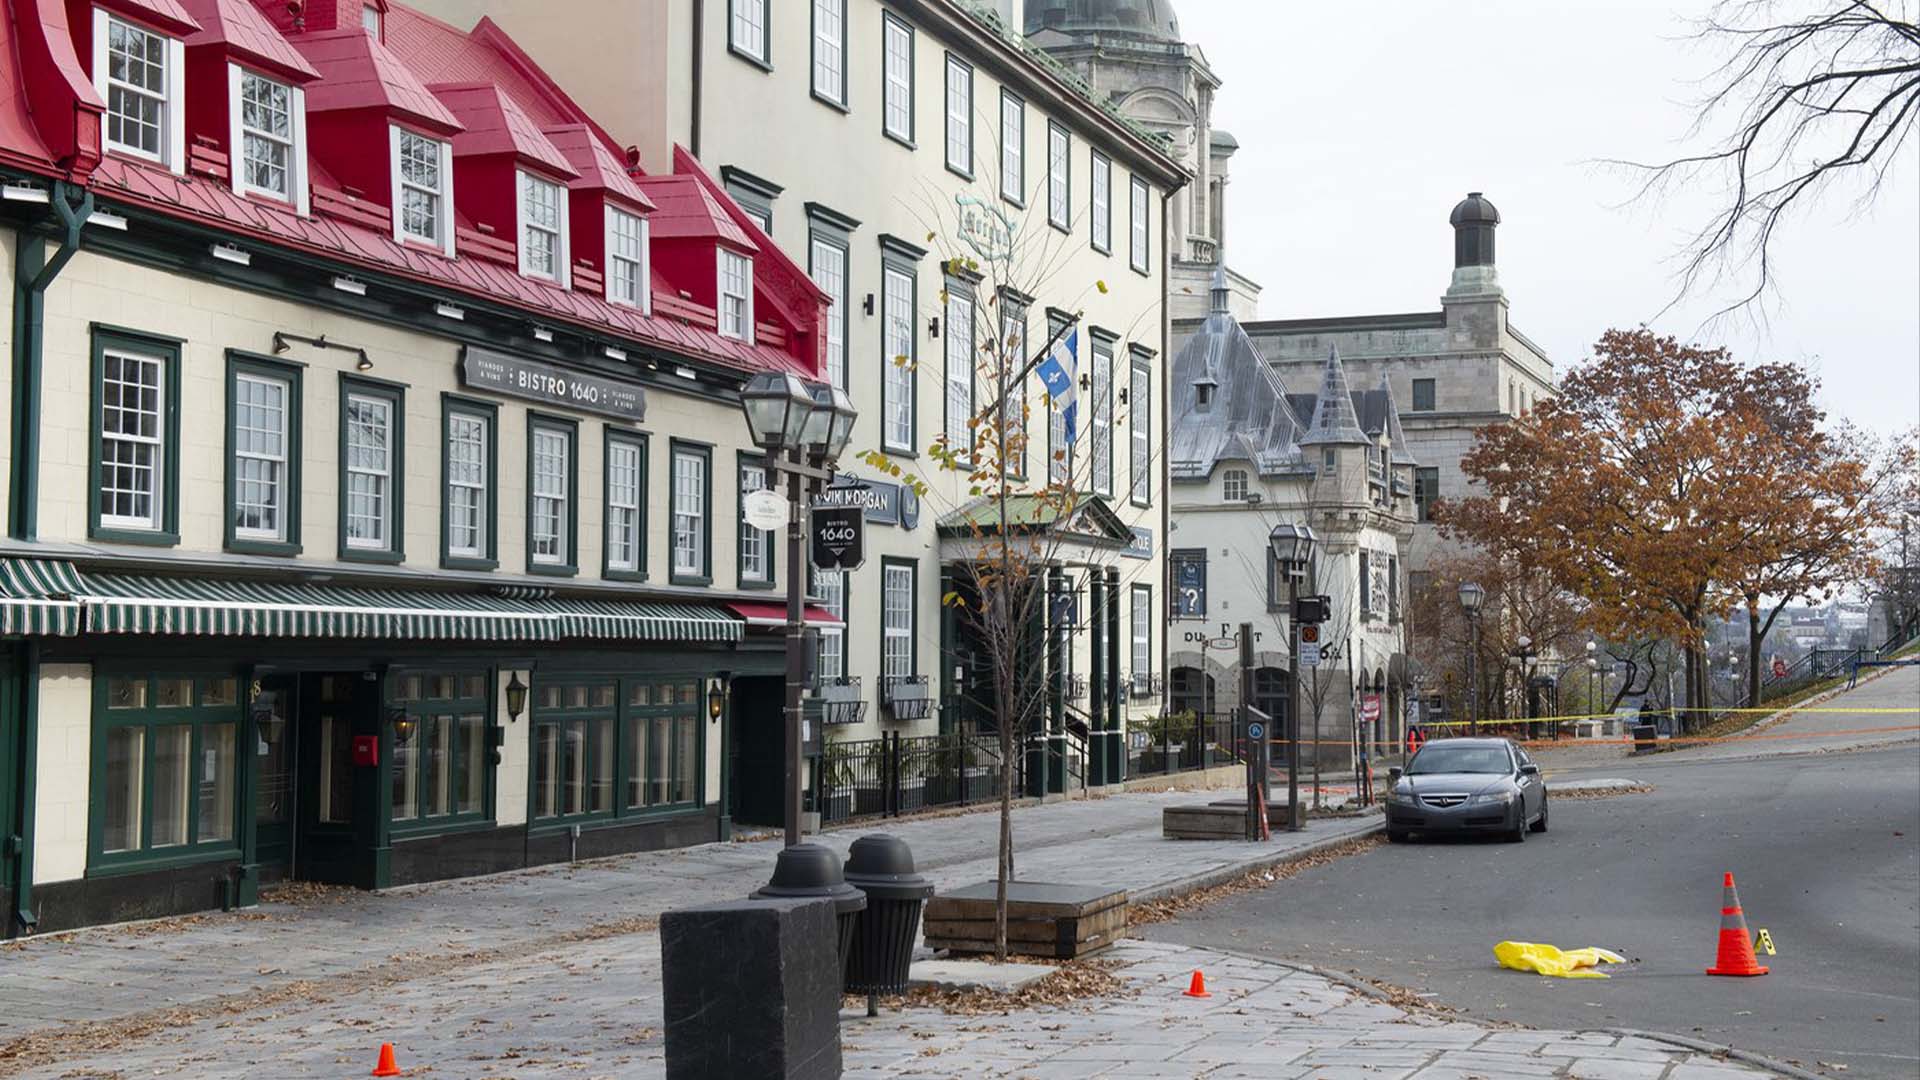 Les attaques du soir de l'Halloween 2020 dans le Vieux-Québec ont provoqué 25 scènes de crime, dans les environs de la colline parlementaire, du Vieux-Québec, particulièrement aux alentours du Château Frontenac et du Vieux-Port. 